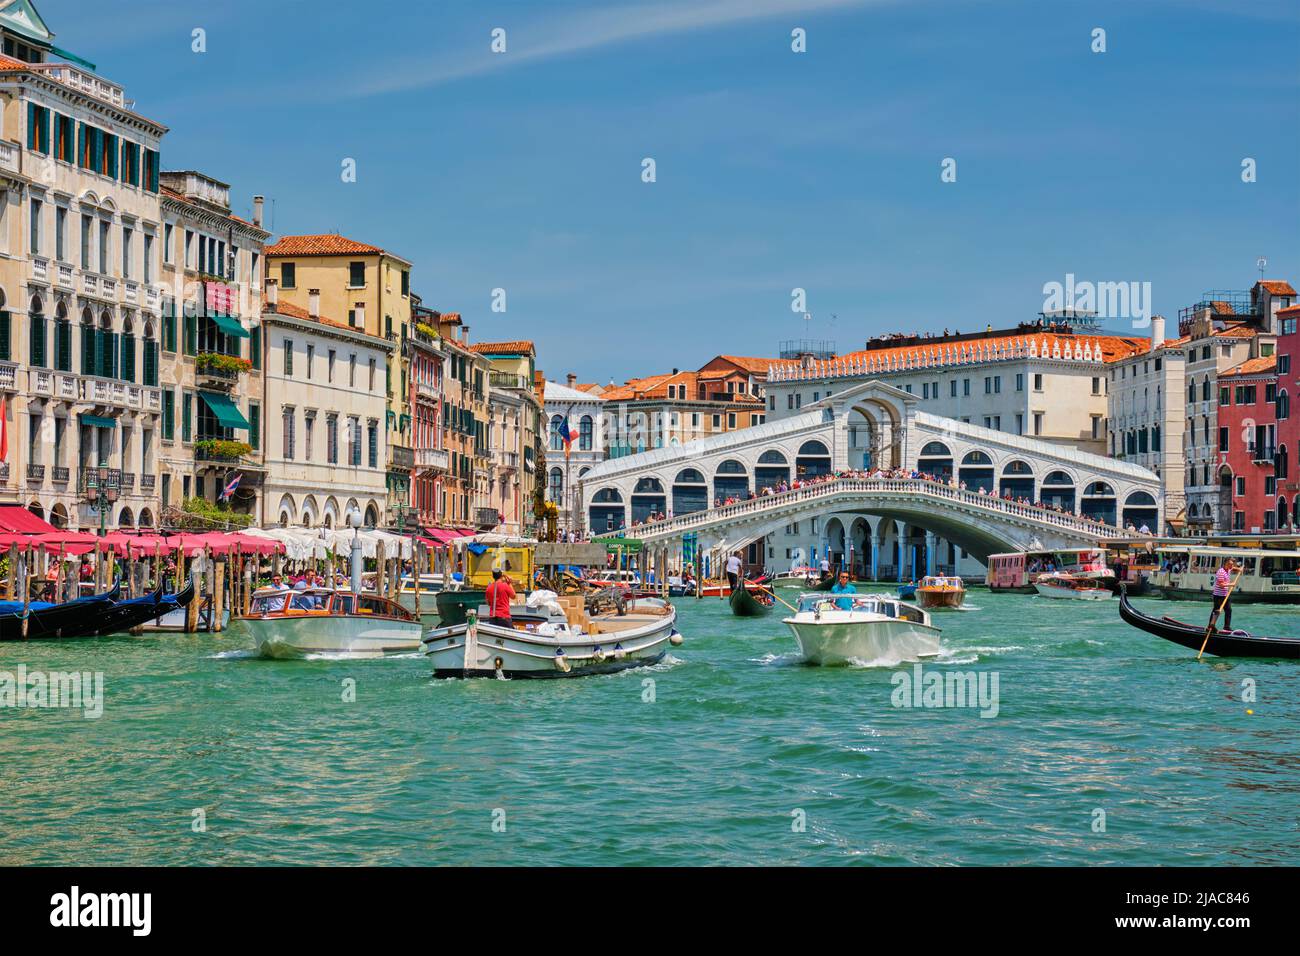 Puente de Rialto con barcos y góndolas. Gran Canal, Venecia, Italia Foto de stock